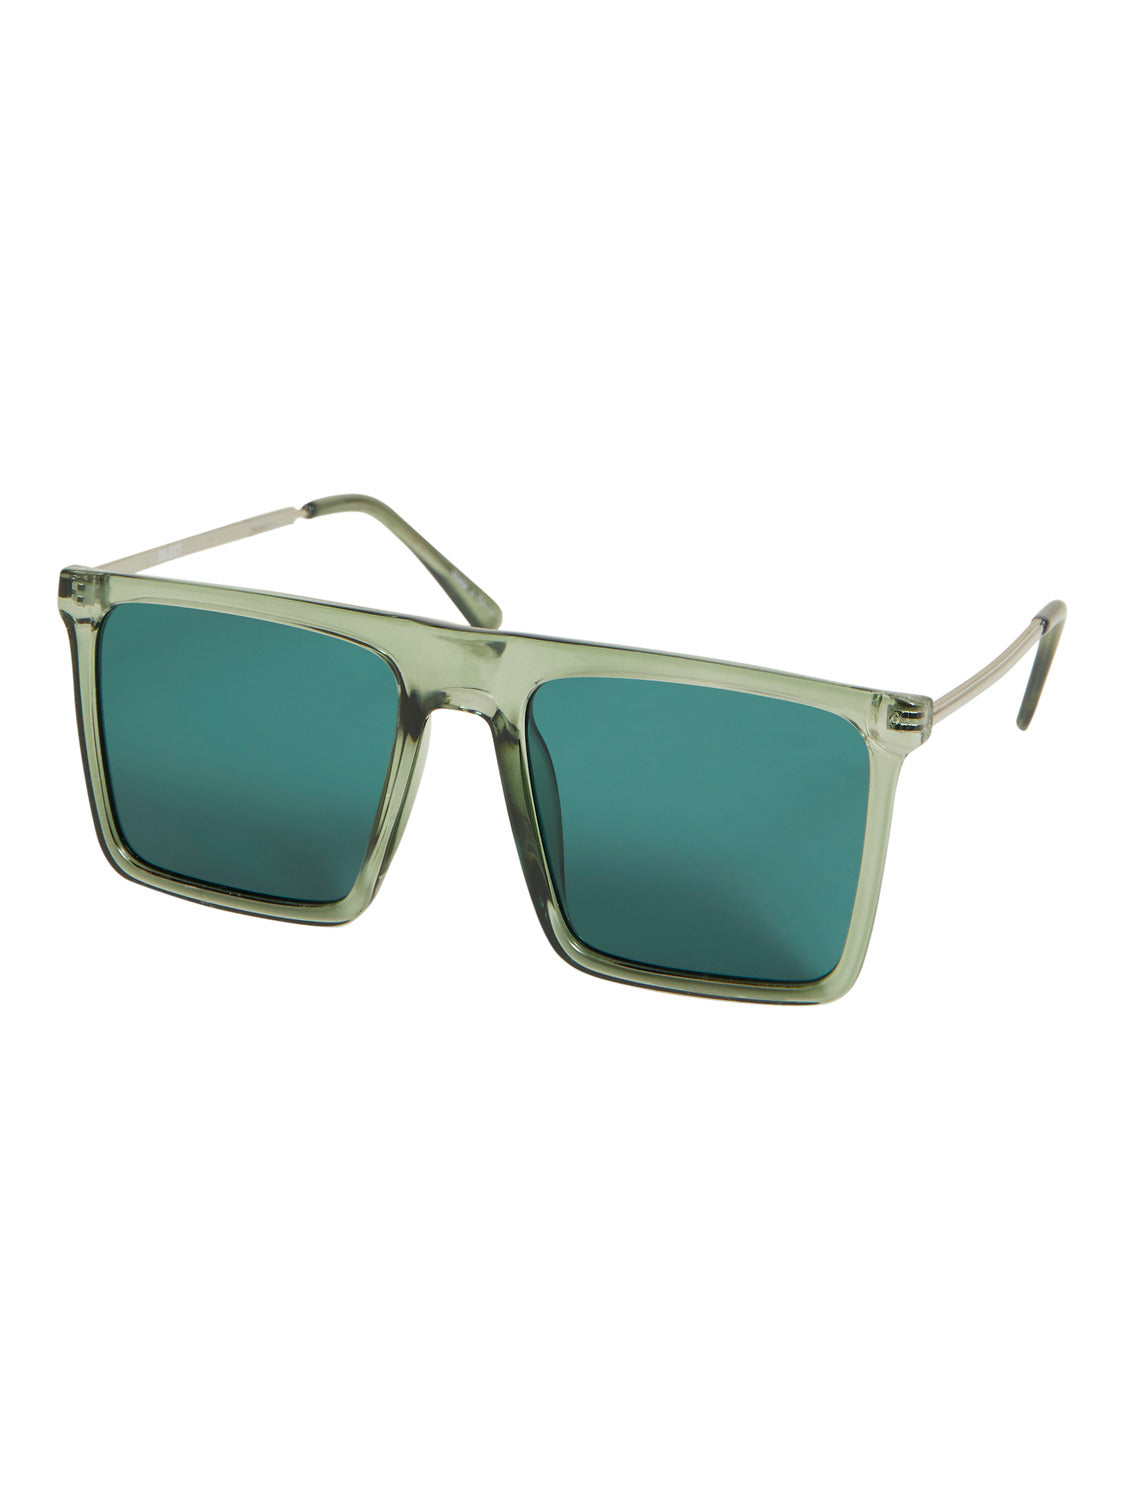 OBJELLIE Sunglasses - Artichoke Green – Brande